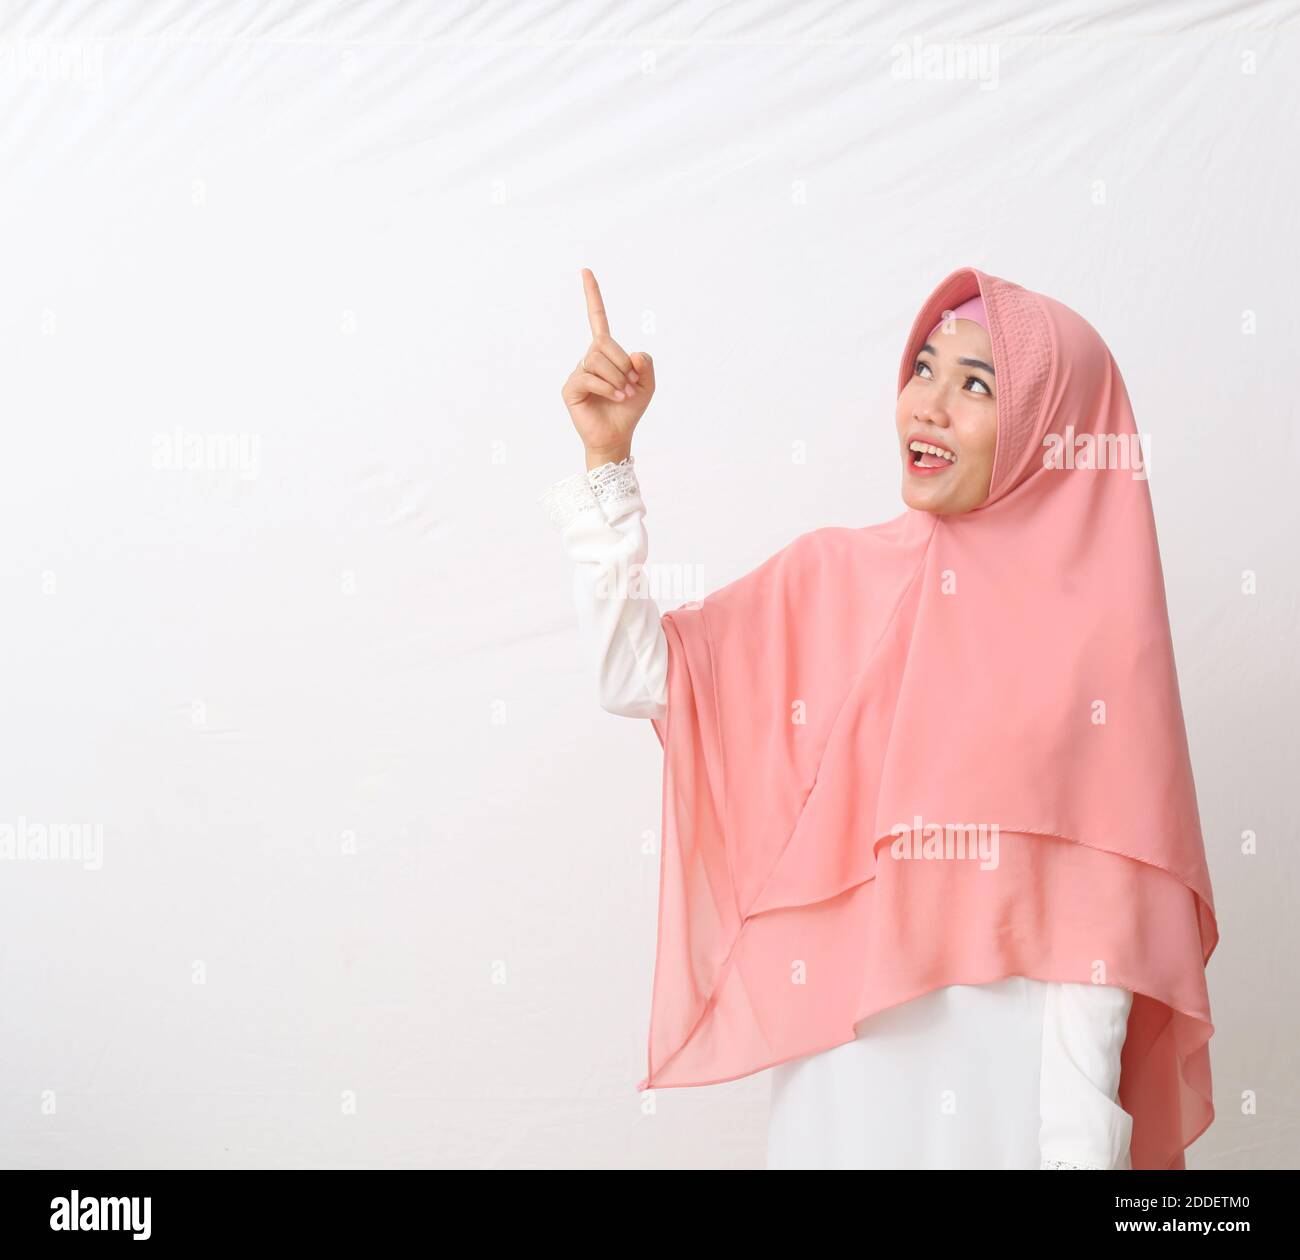 Un ritratto della donna musulmana asiatica felice che indossa un velo o un hijab sorridente e guardando lo spazio vuoto mentre indica qualcosa. Isolato su sfondo bianco Foto Stock